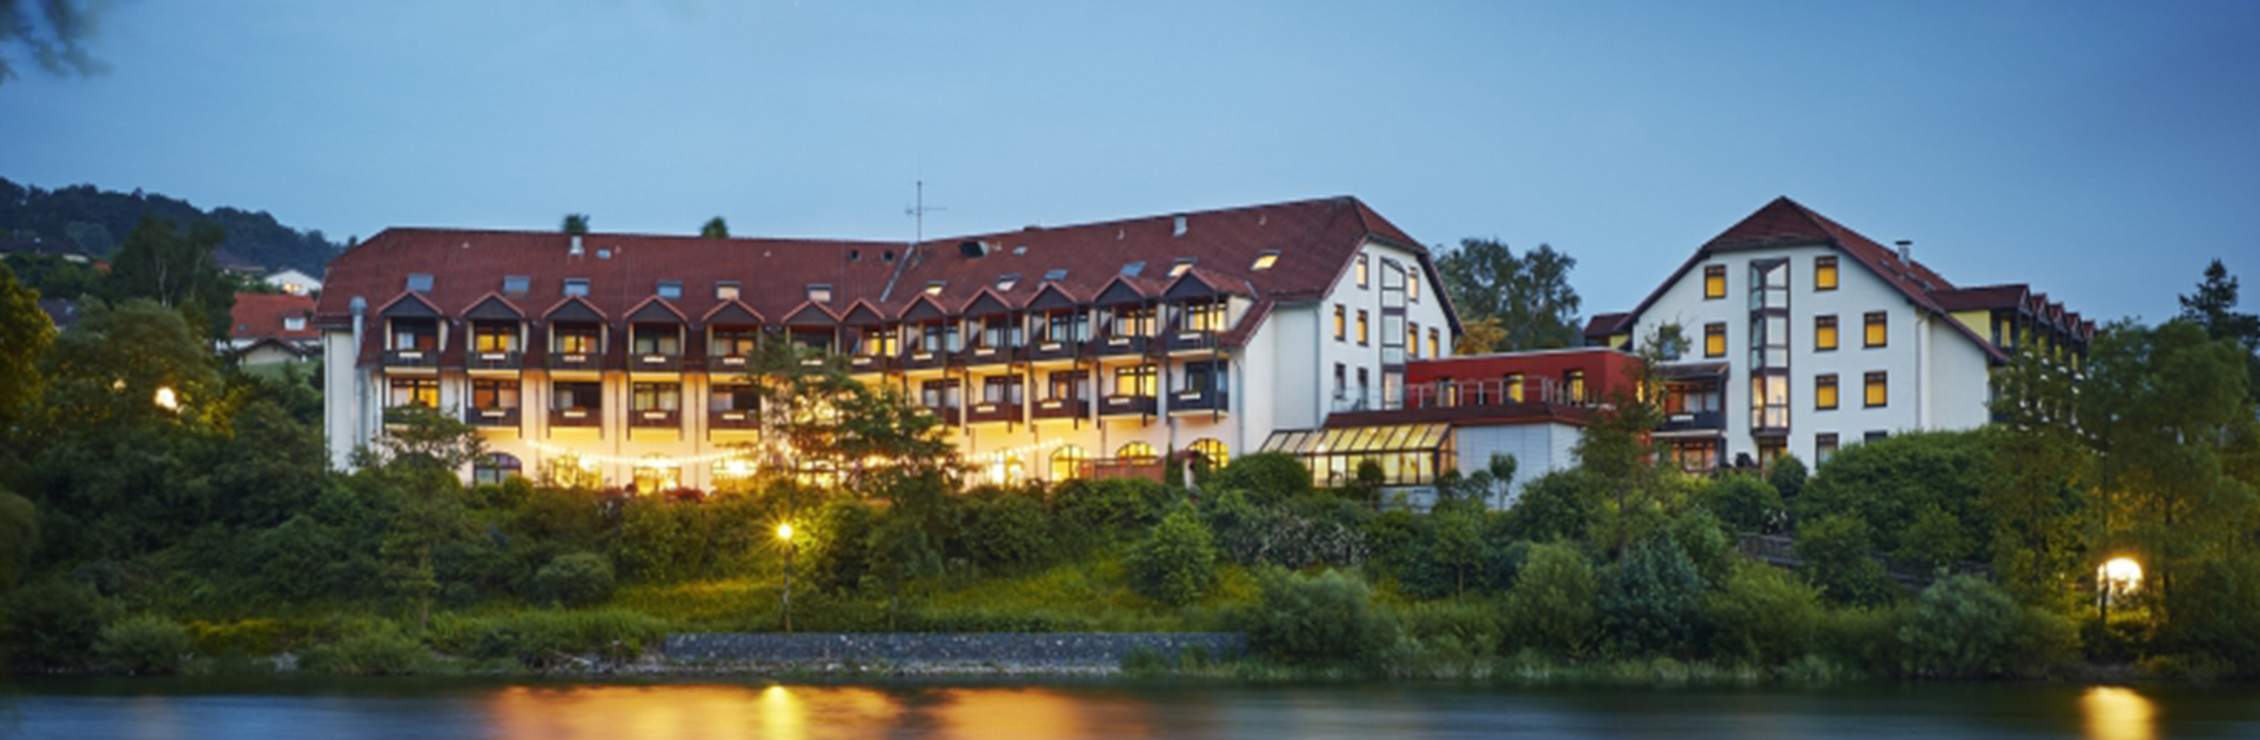 Göbel’s Seehotel – Diemelsee im hessischen Sauerland